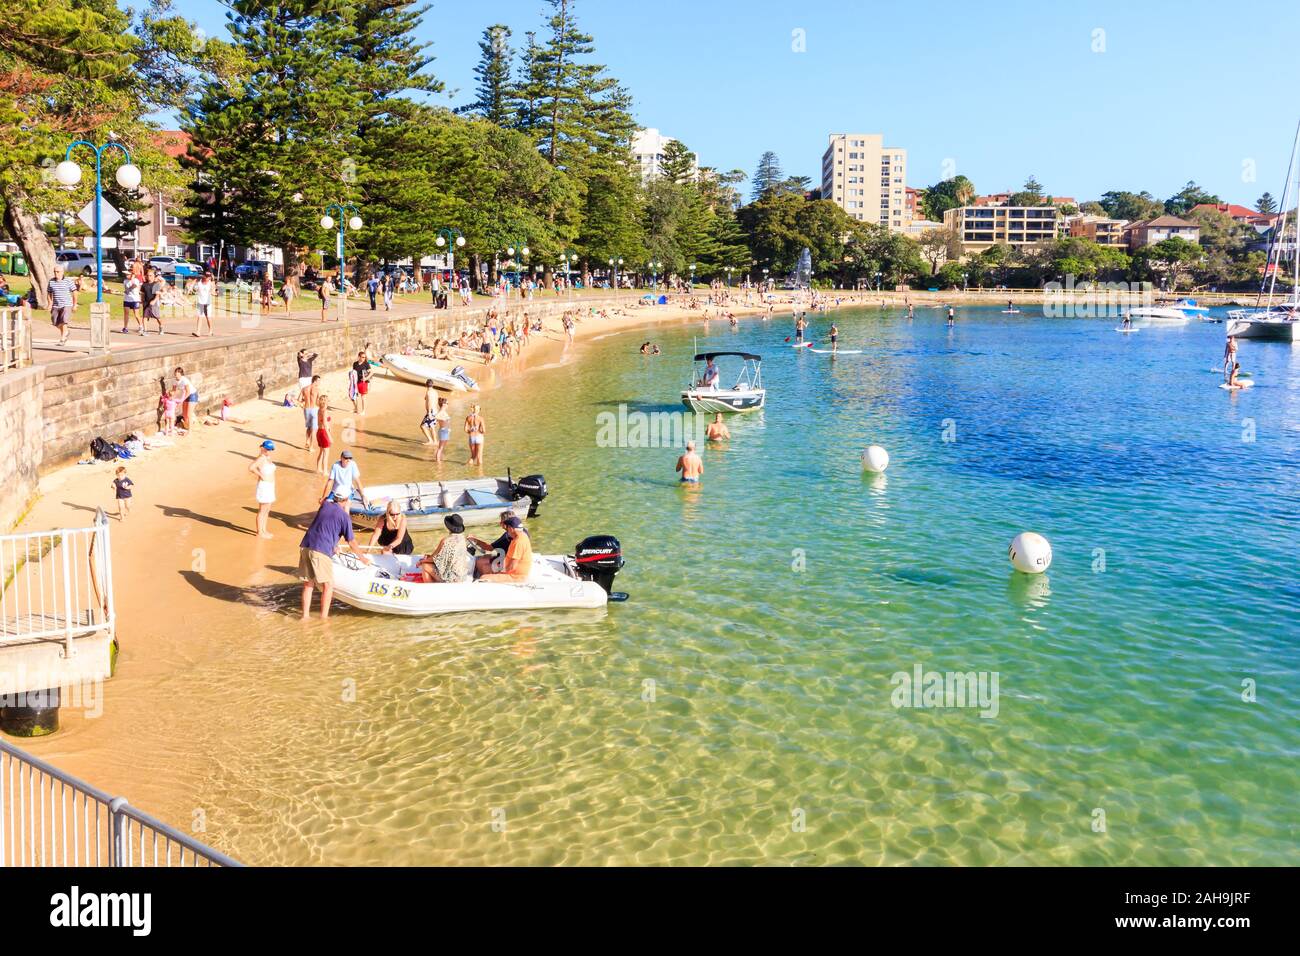 Sydney, Australien - 30. Dezember 2013: Personen, die den Strand in Manly Cove. Manly ist einer der nördlichen Strände Stockfoto